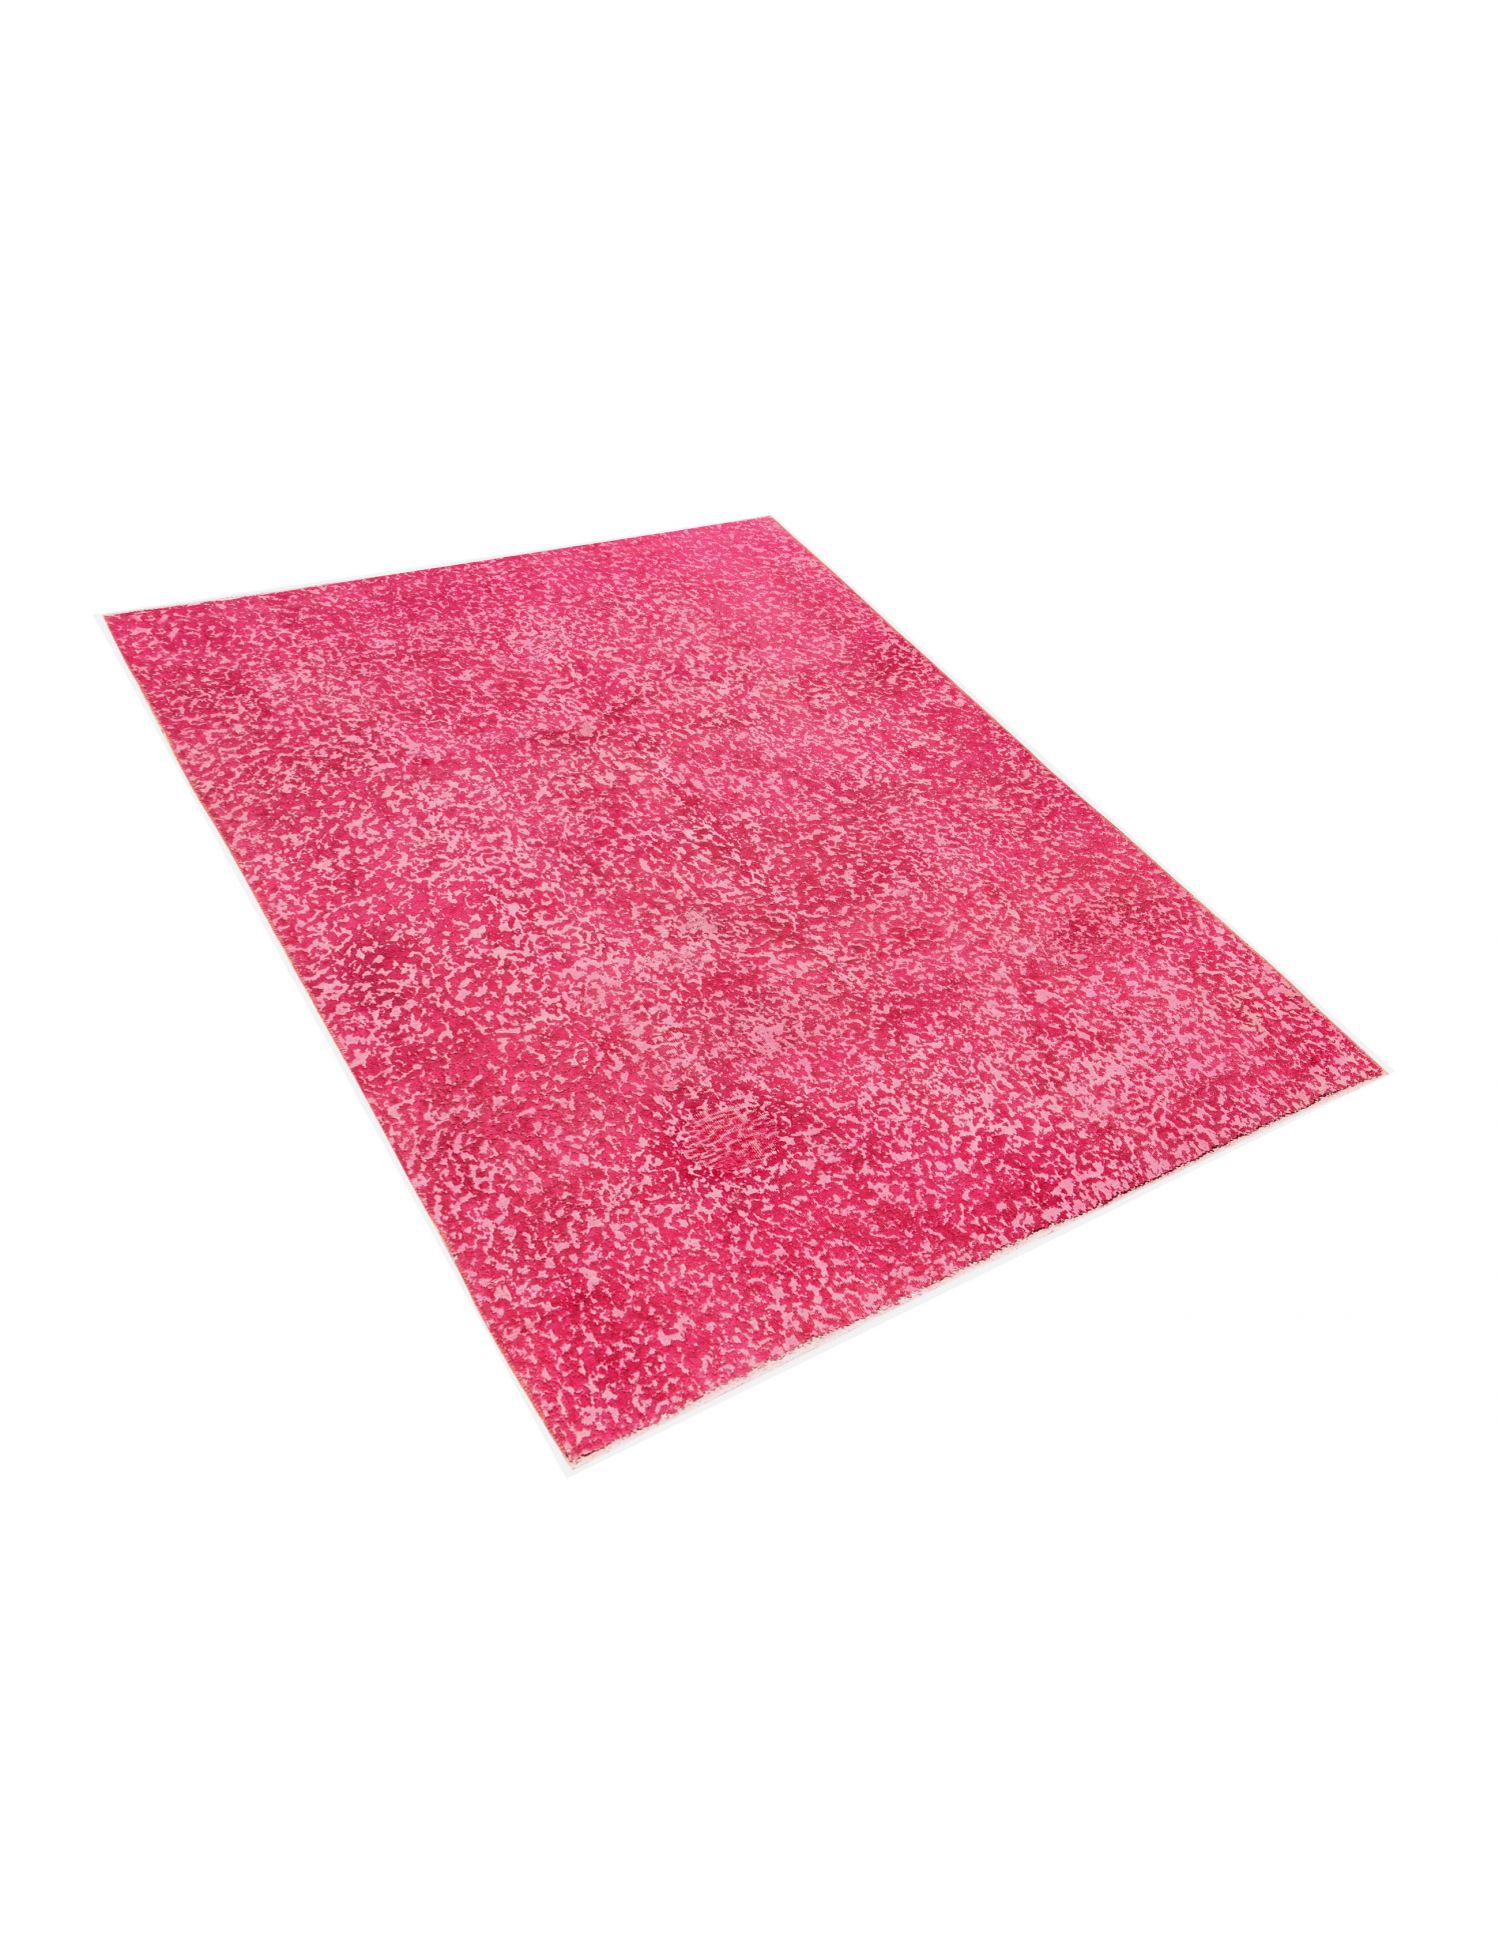 Persischer vintage teppich  rosa <br/>270 x 197 cm